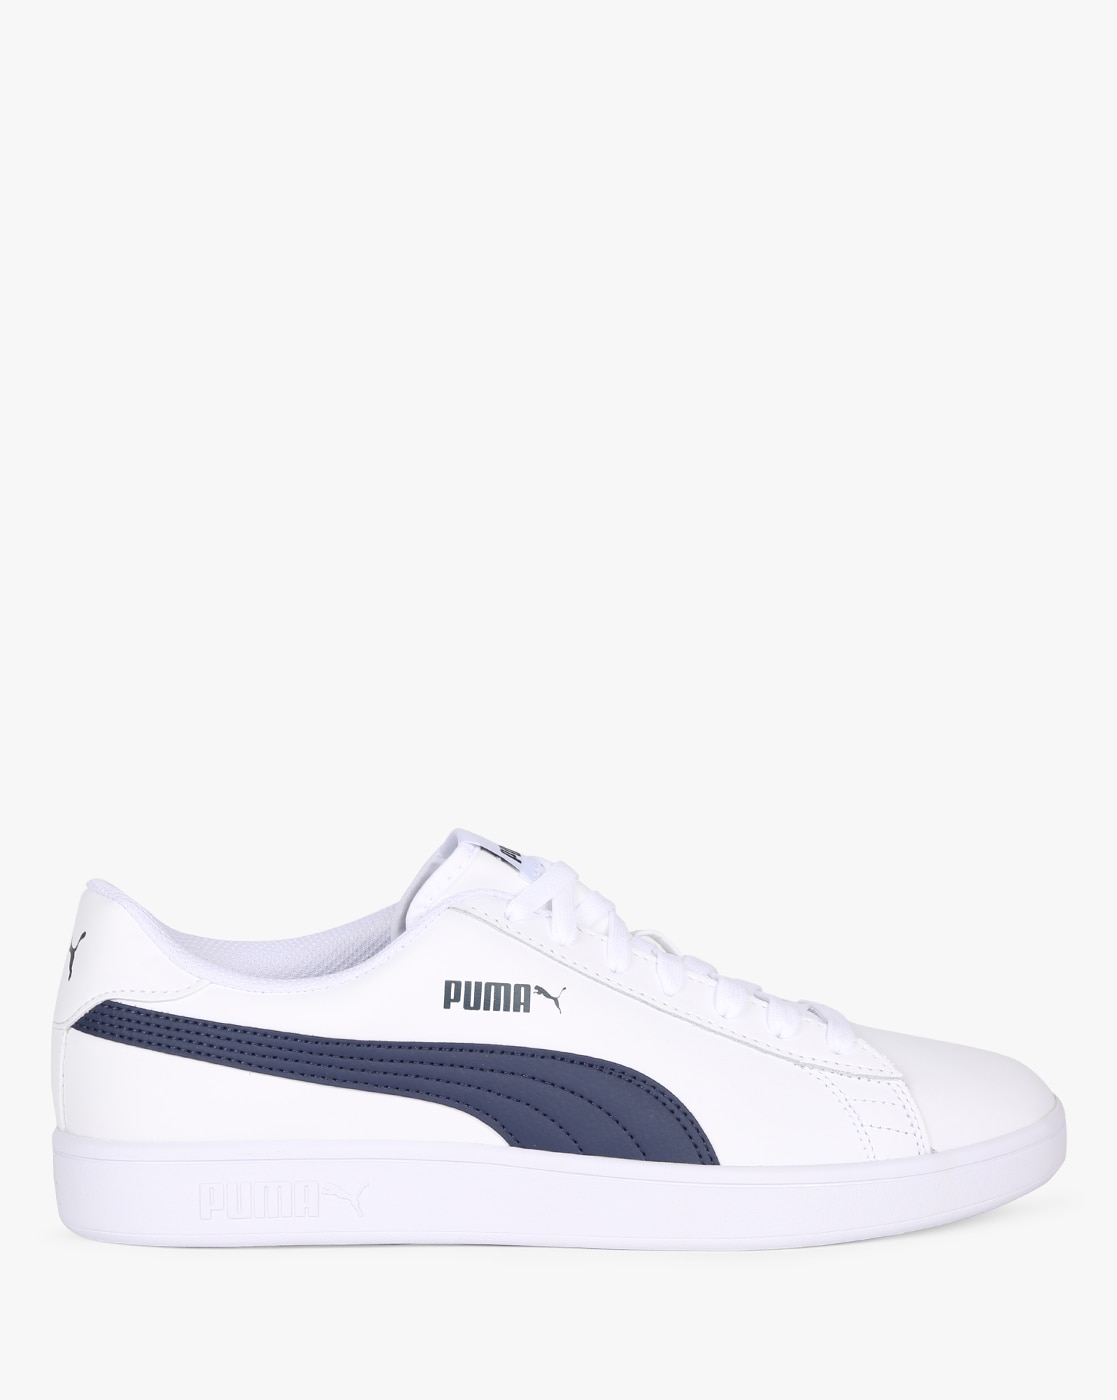 shop puma sneakers